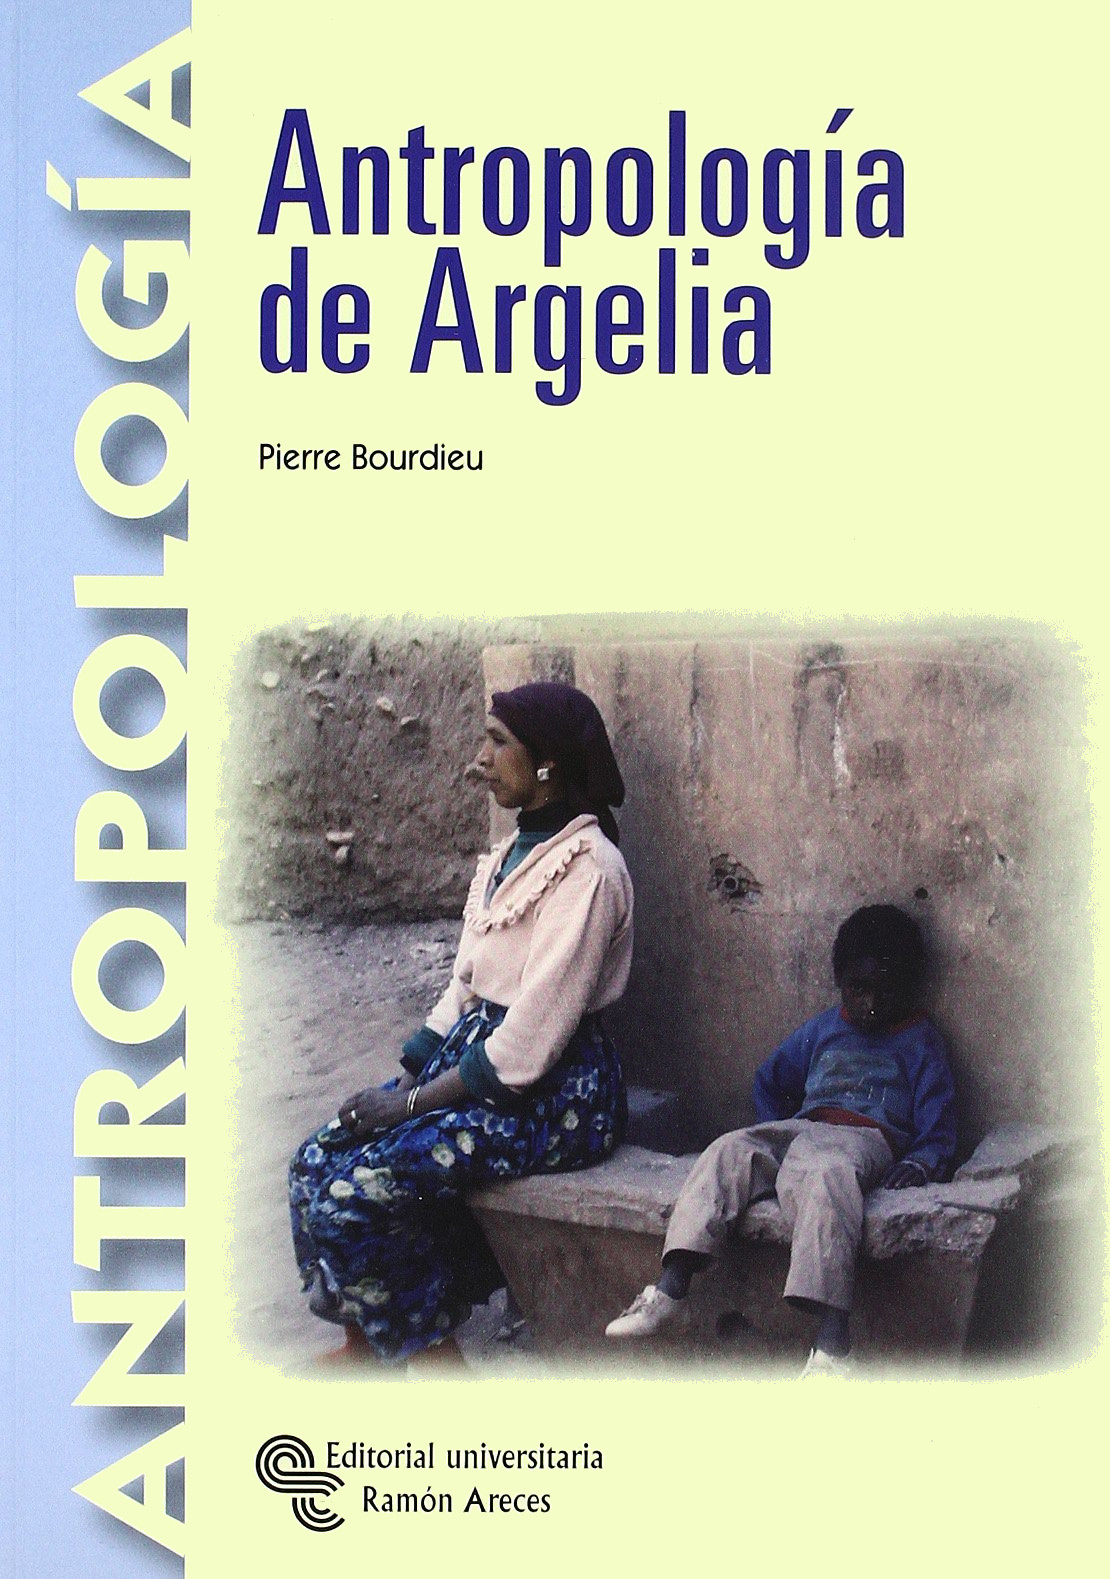 bourdieu-antropologia-argelia-libro